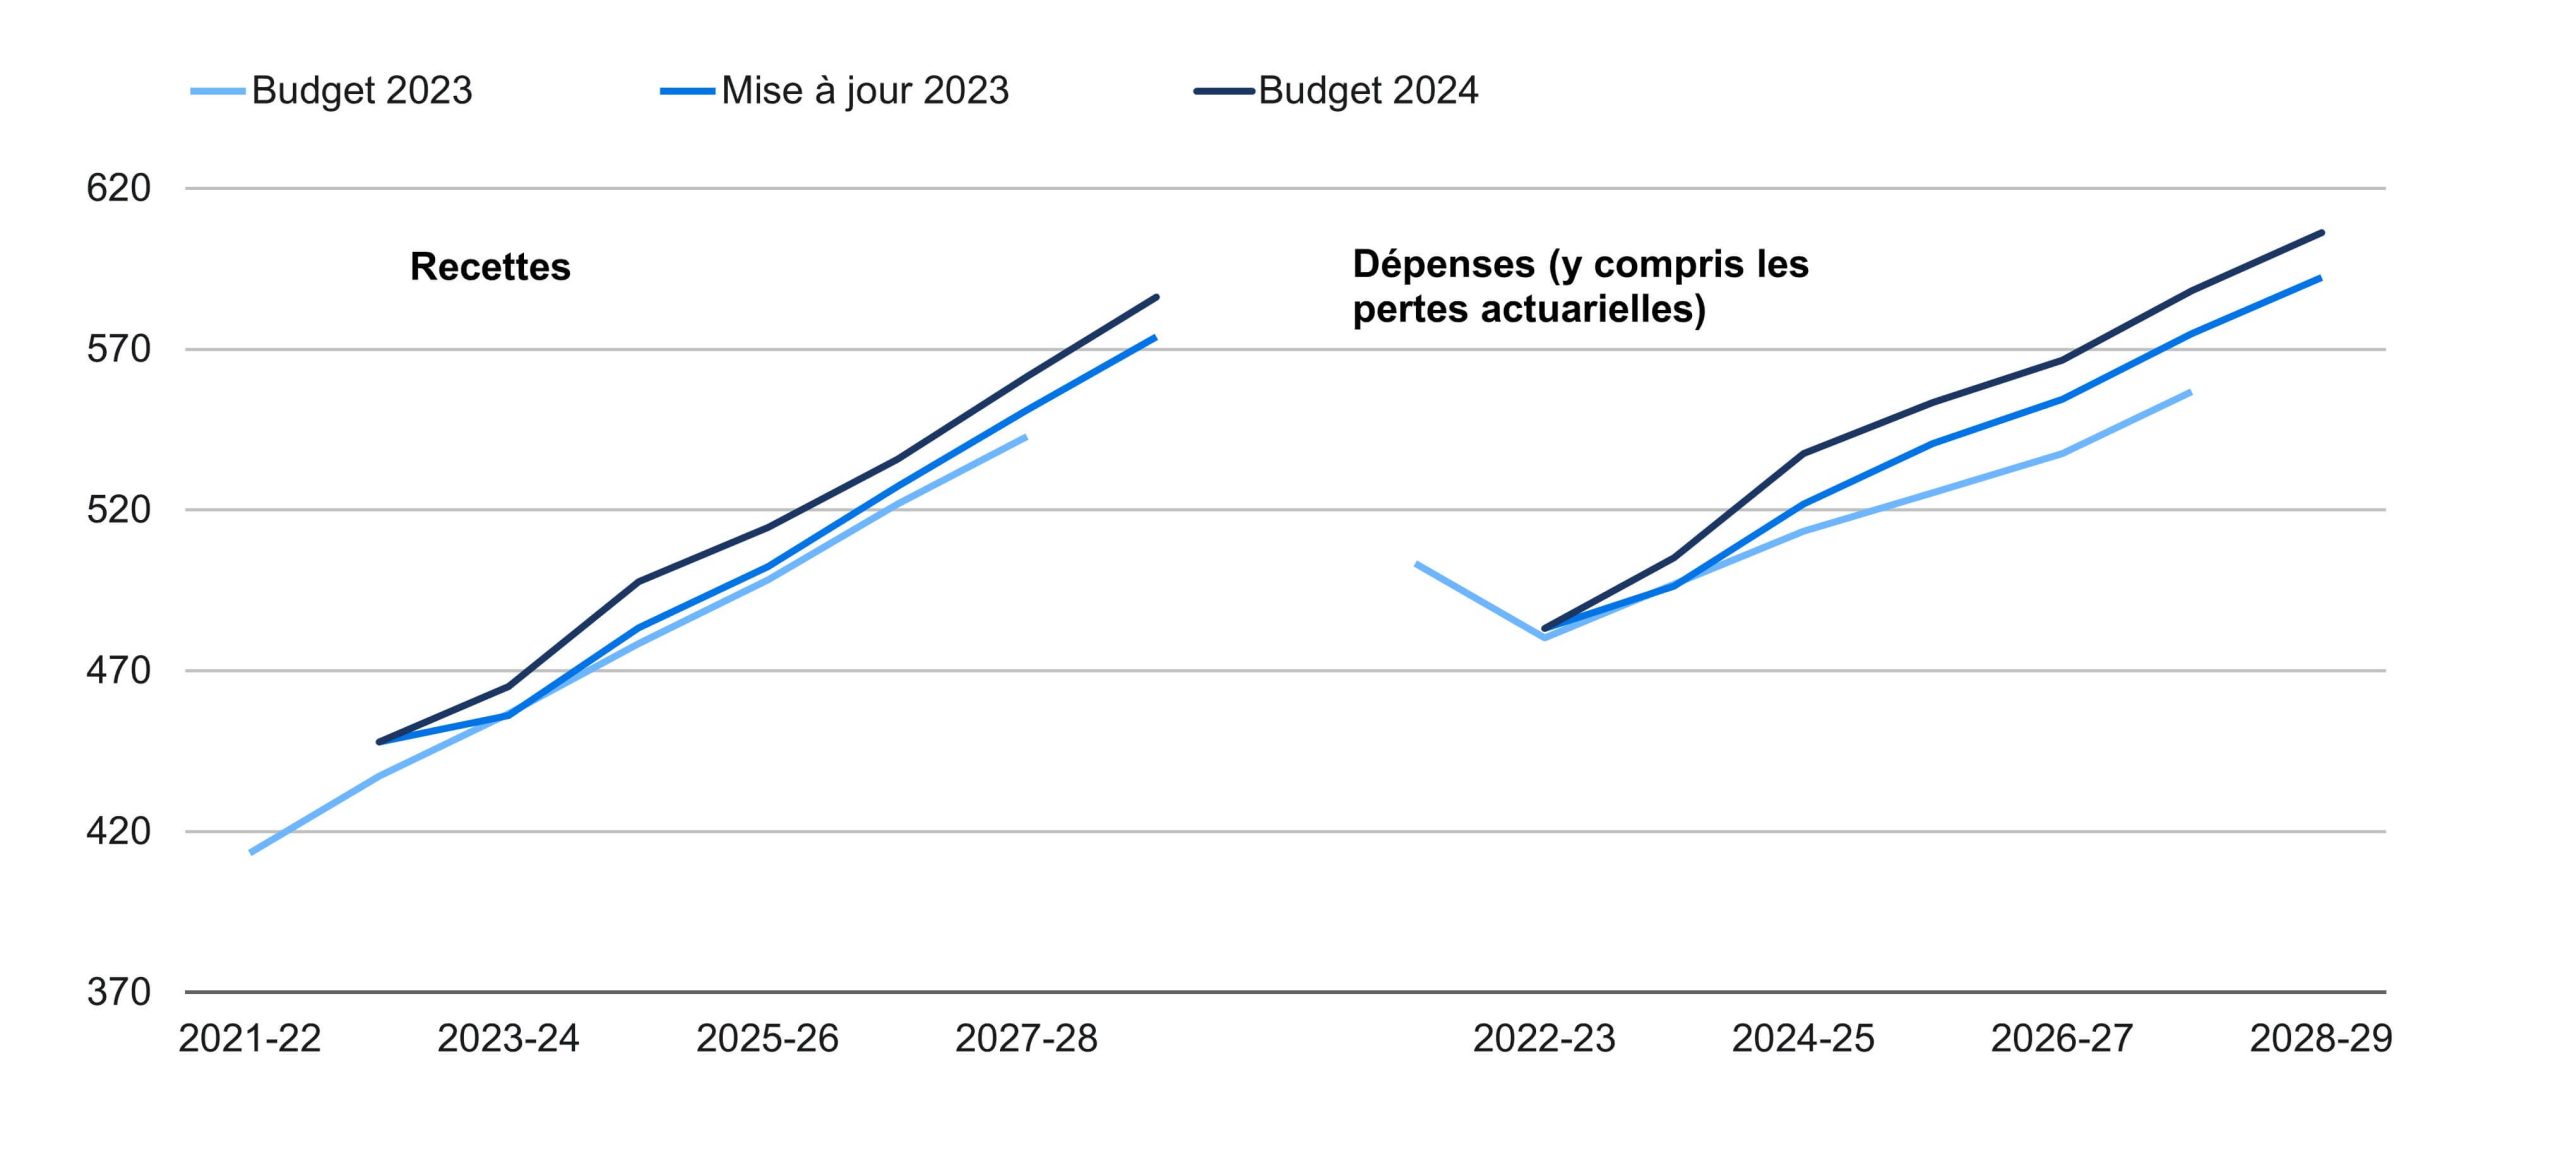 Graphique linéaire montrant les projections de recettes et de dépenses à moyen terme du budget fédéral de 2024, ainsi que les projections précédentes de 2023.